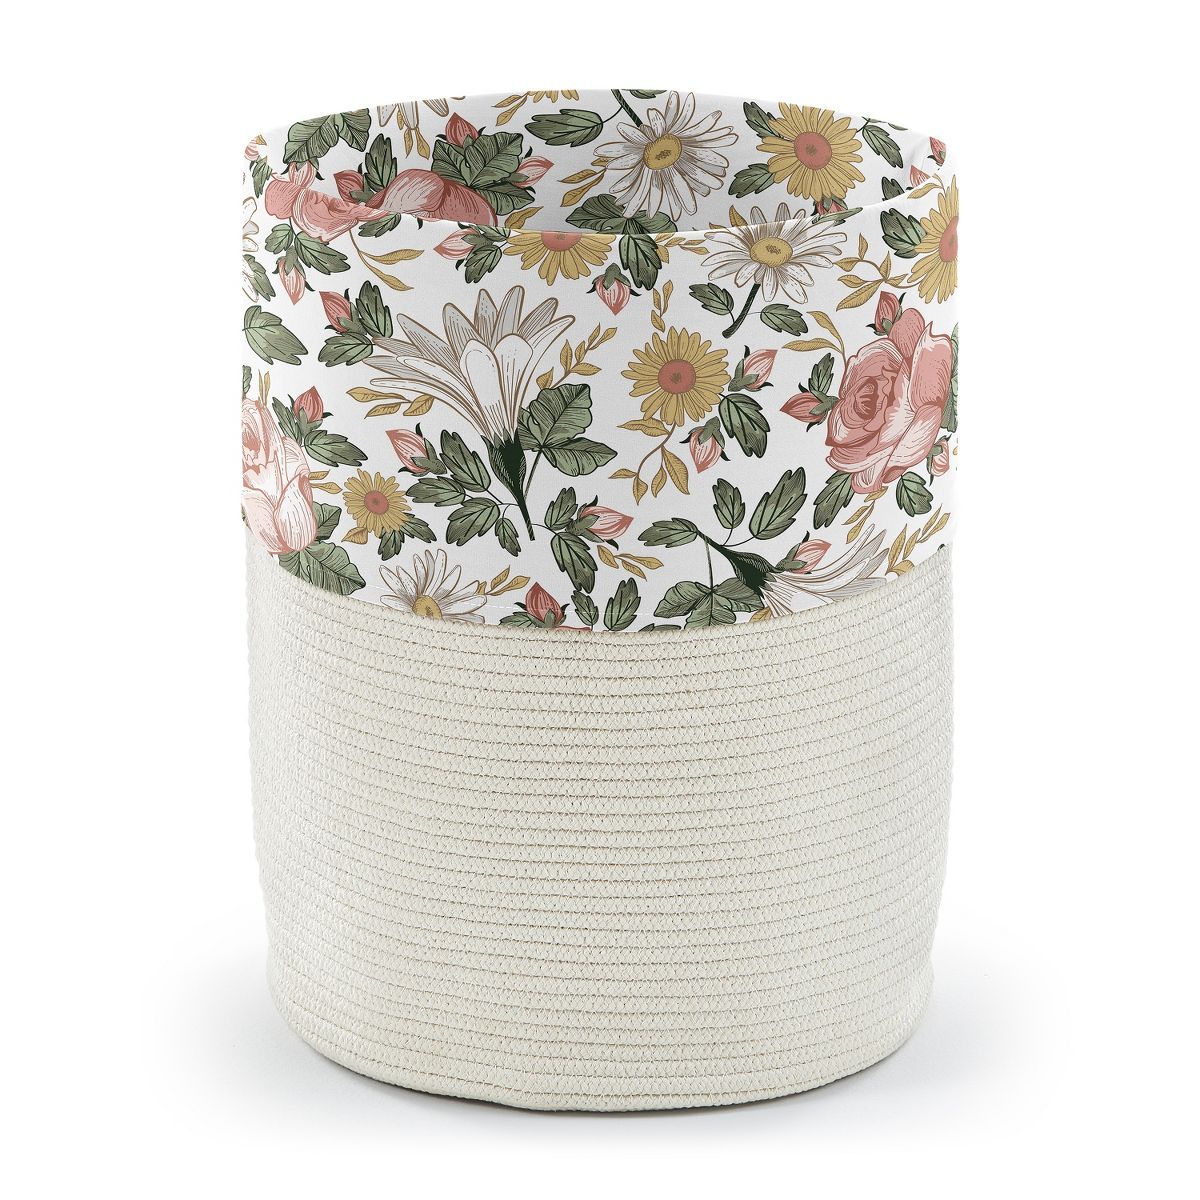 Sweet Jojo Designs Woven Cotton Rope Laundry Hamper Decorative Storage Basket Vintage Floral Pink... | Target